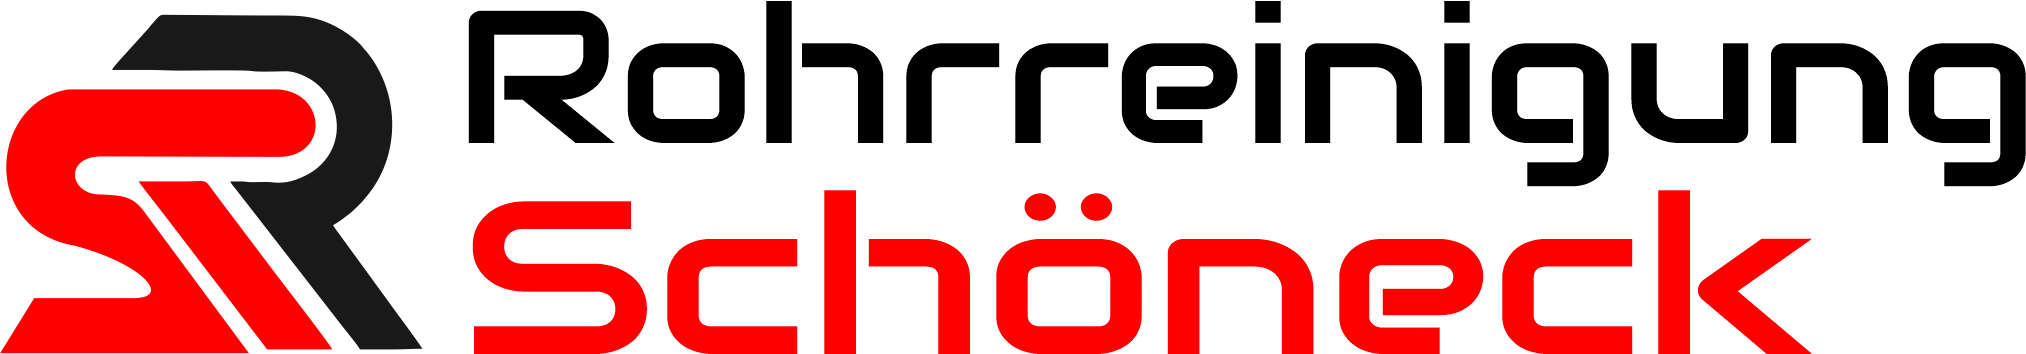 Rohrreinigung Schöneck Logo